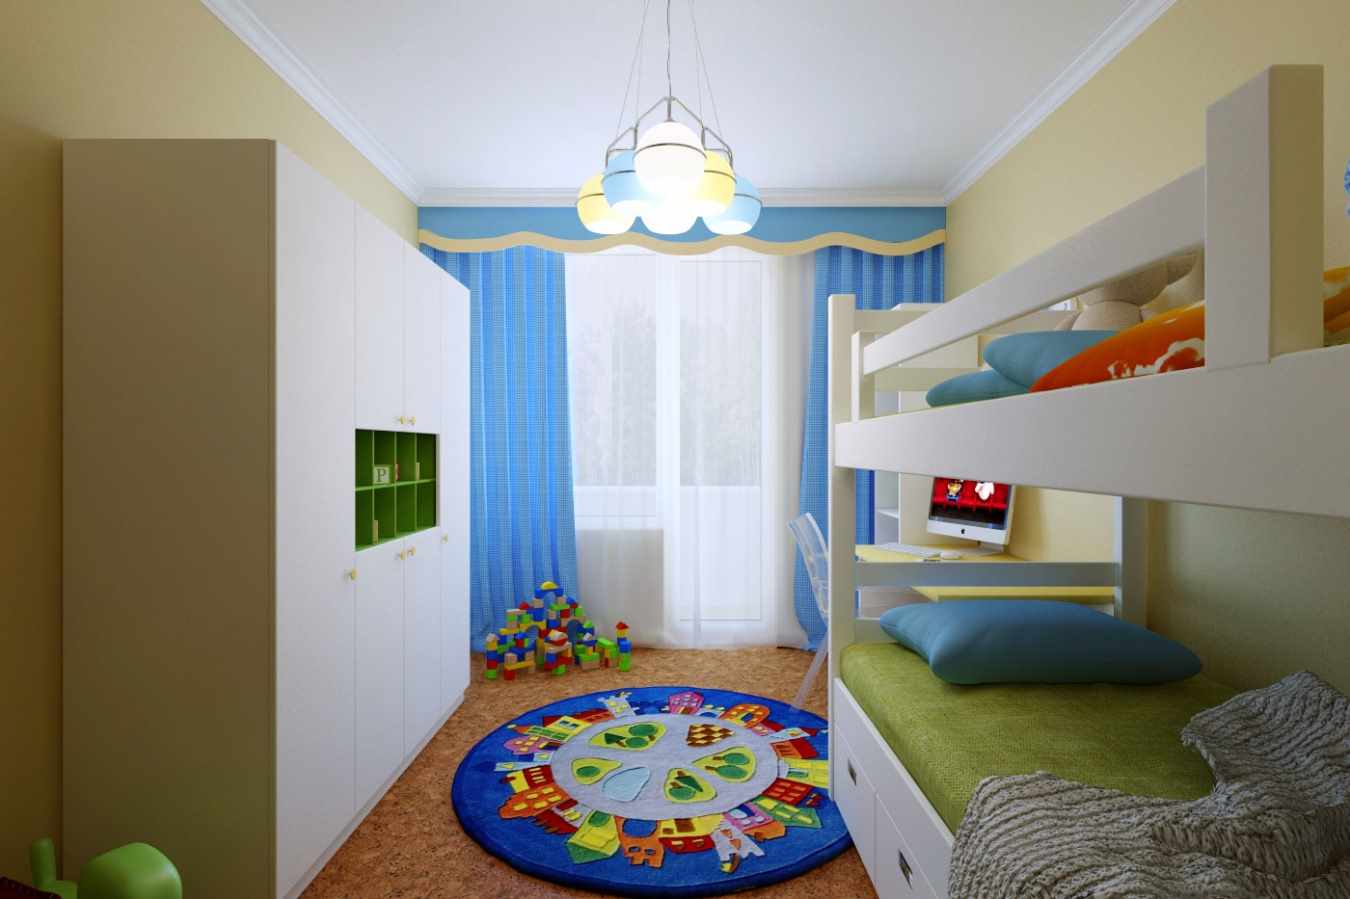 ví dụ về phong cách tươi sáng của phòng trẻ em